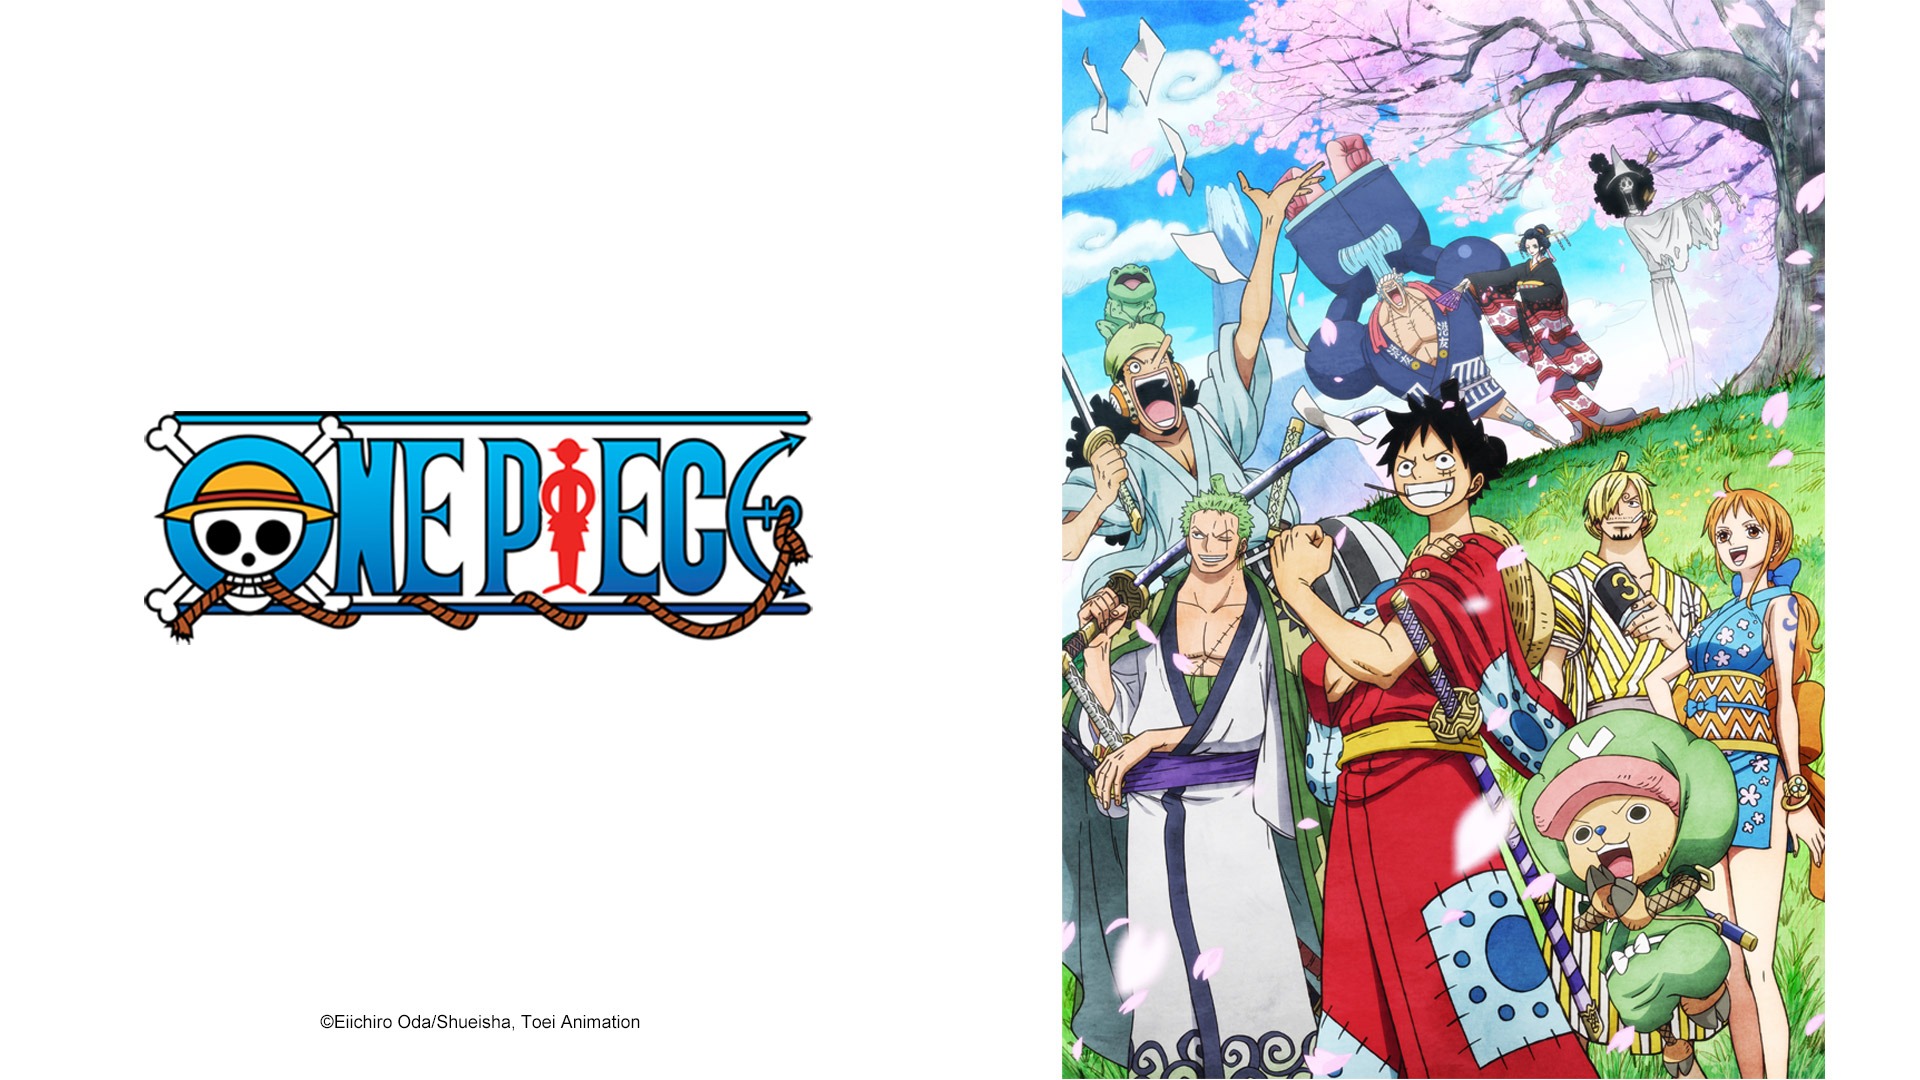 EP1007: One Piece - Watch HD Video Online - WeTV